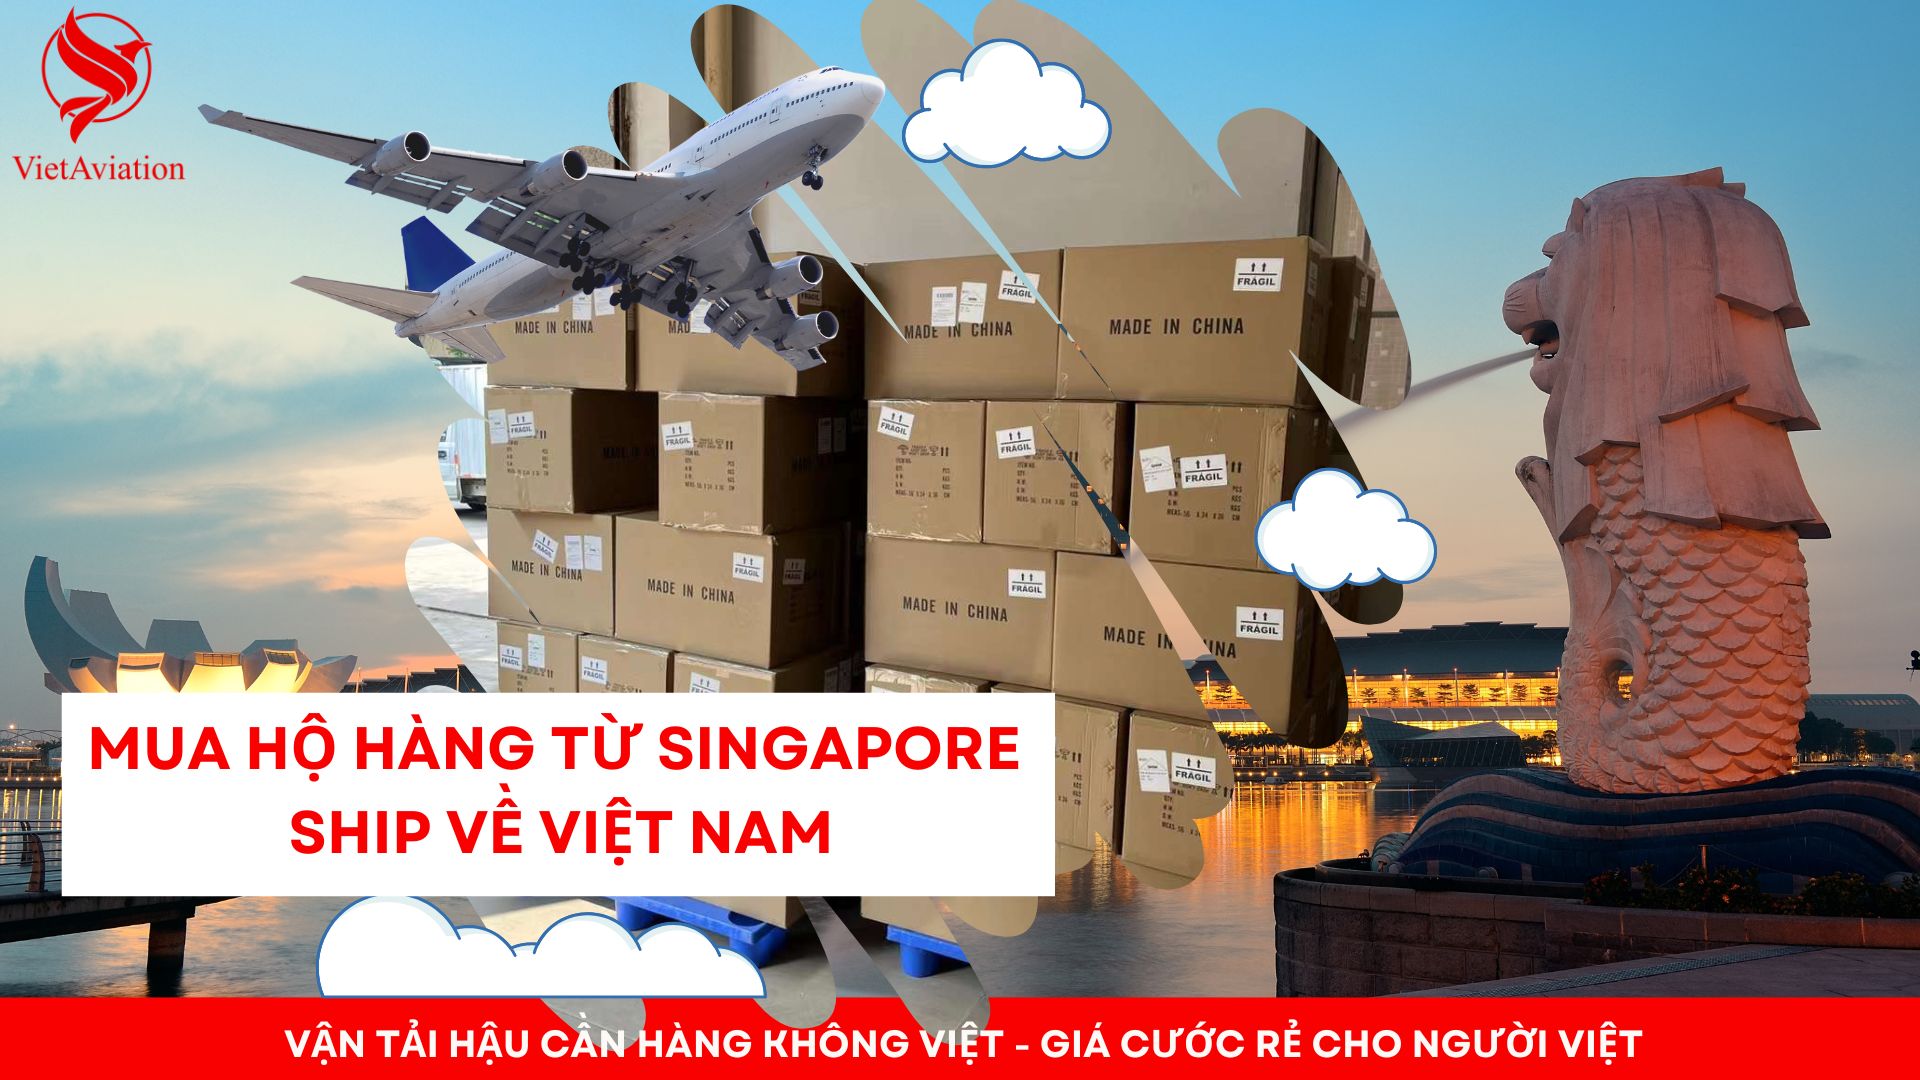 Mua hộ hàng từ Singapore ship về Việt Nam giá rẻ